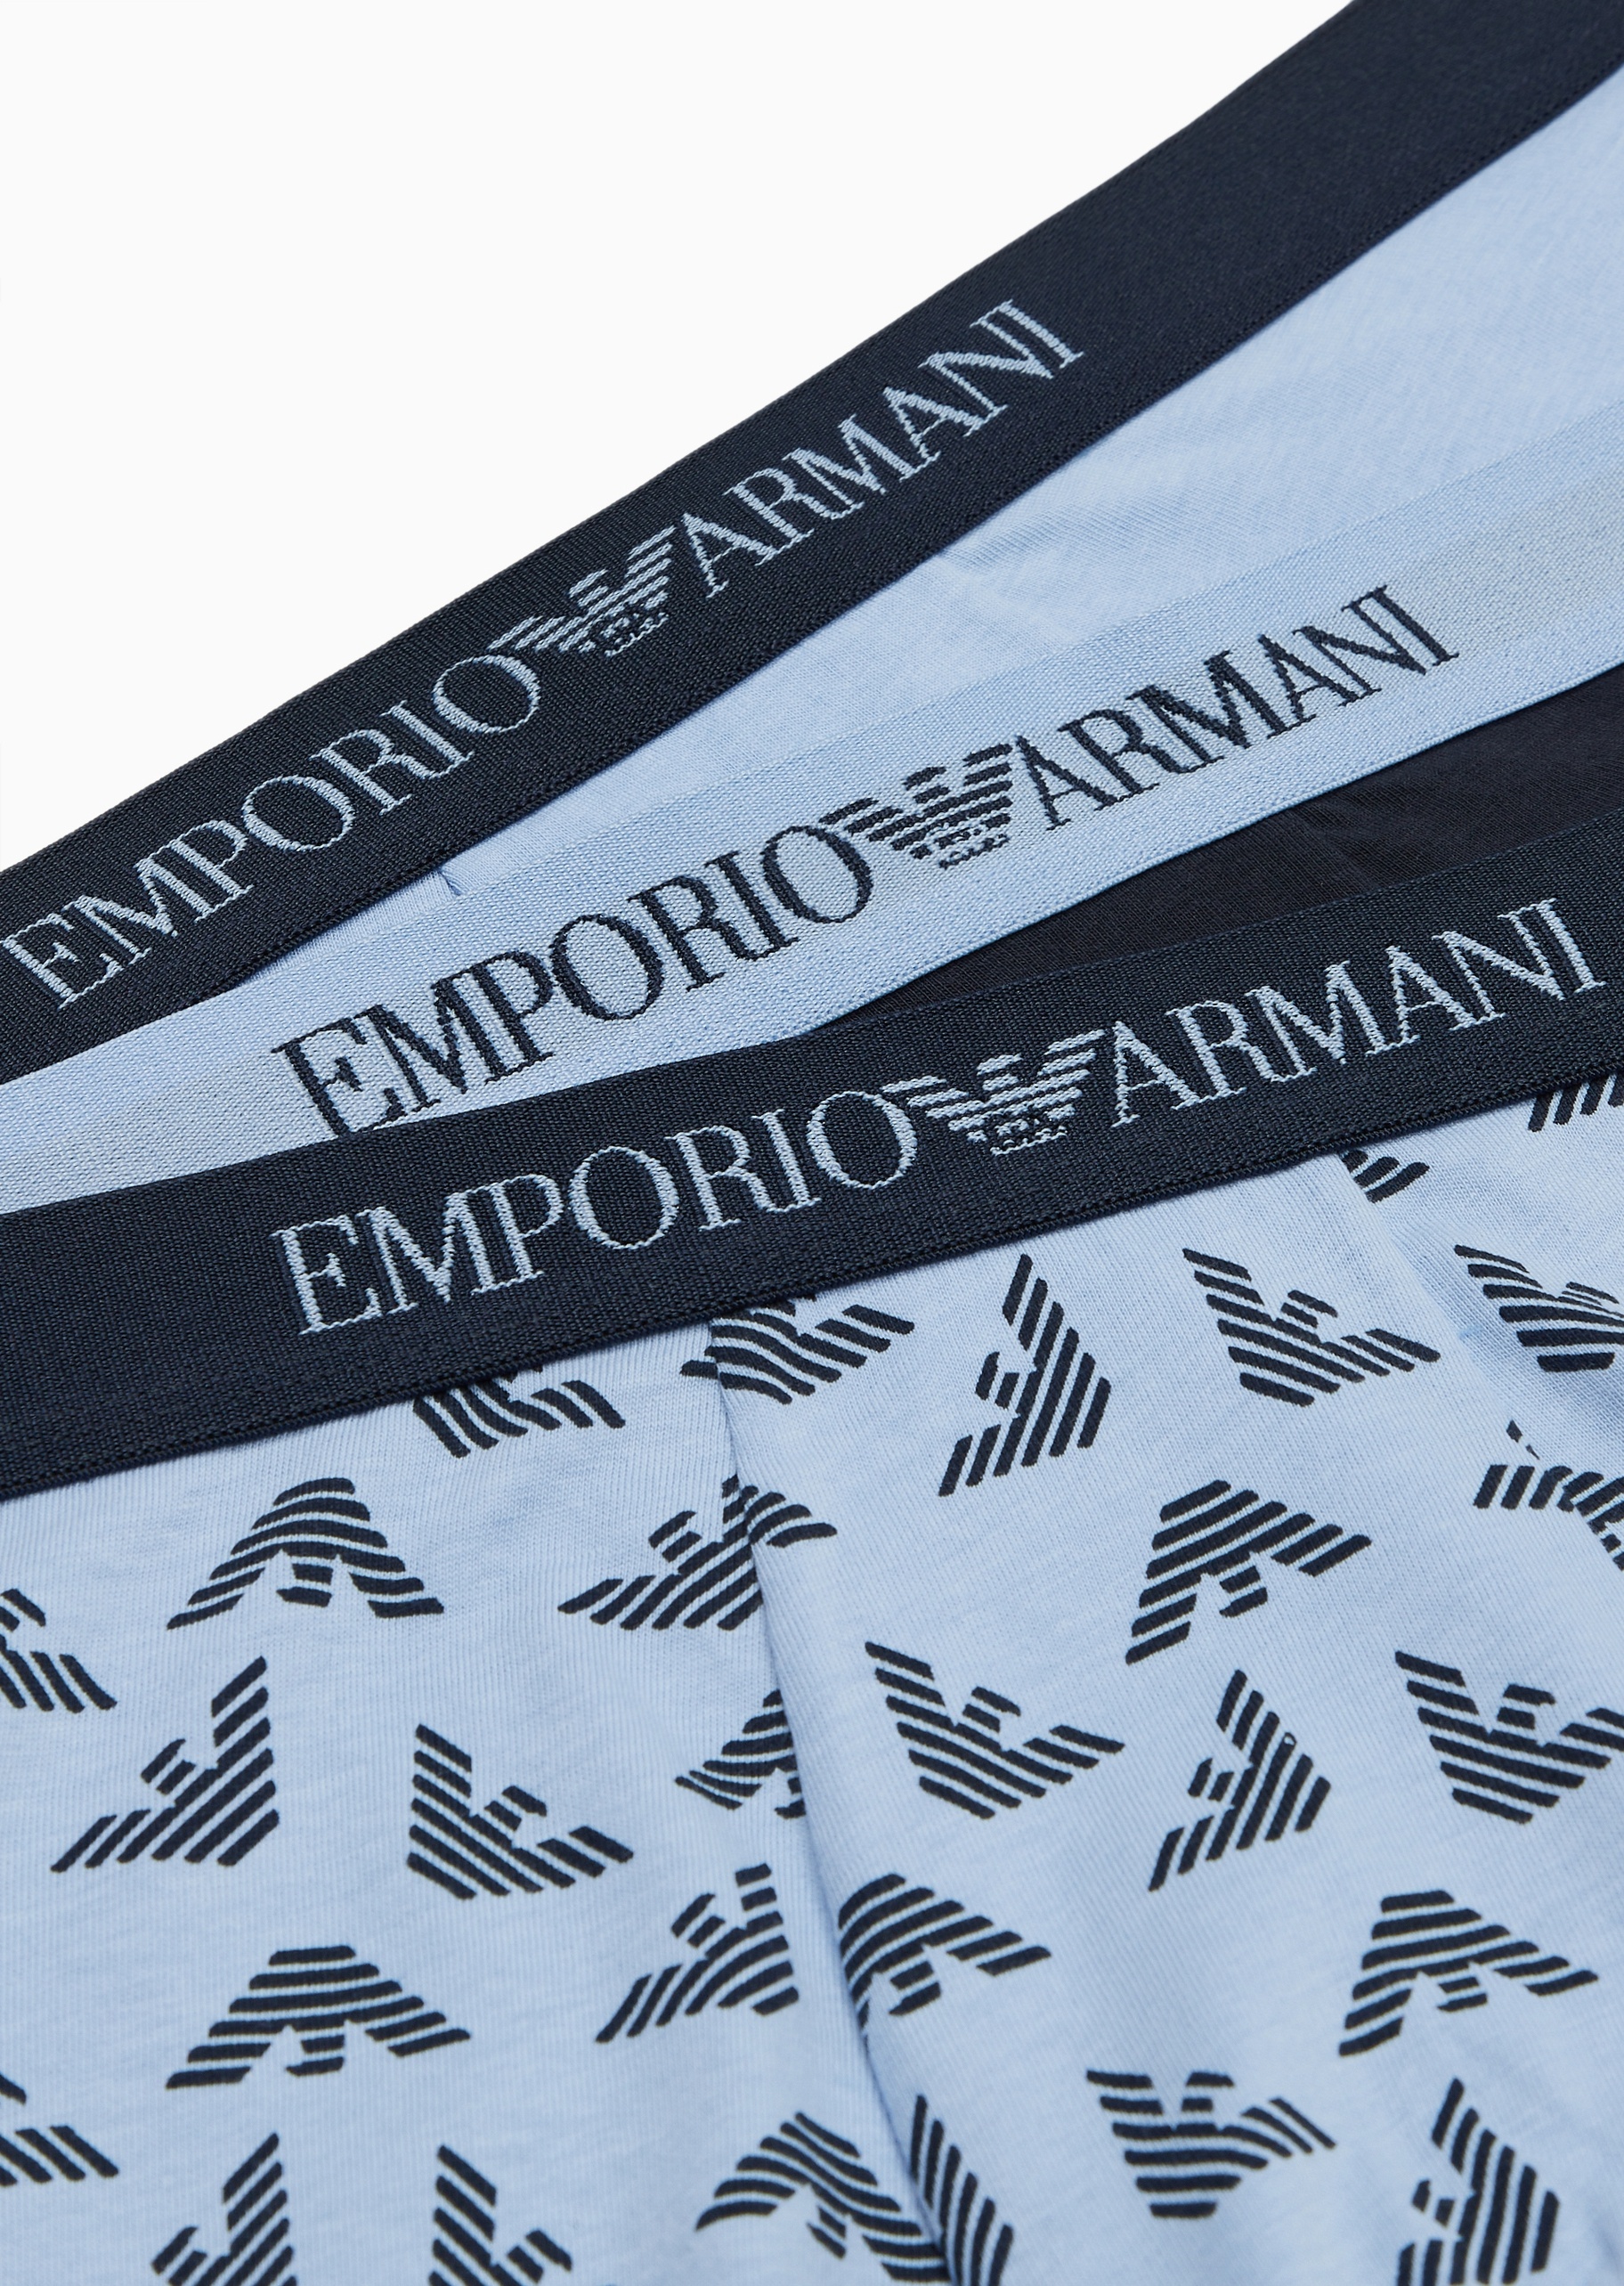 Emporio Armani 男士全棉修身平角三条装内裤套装